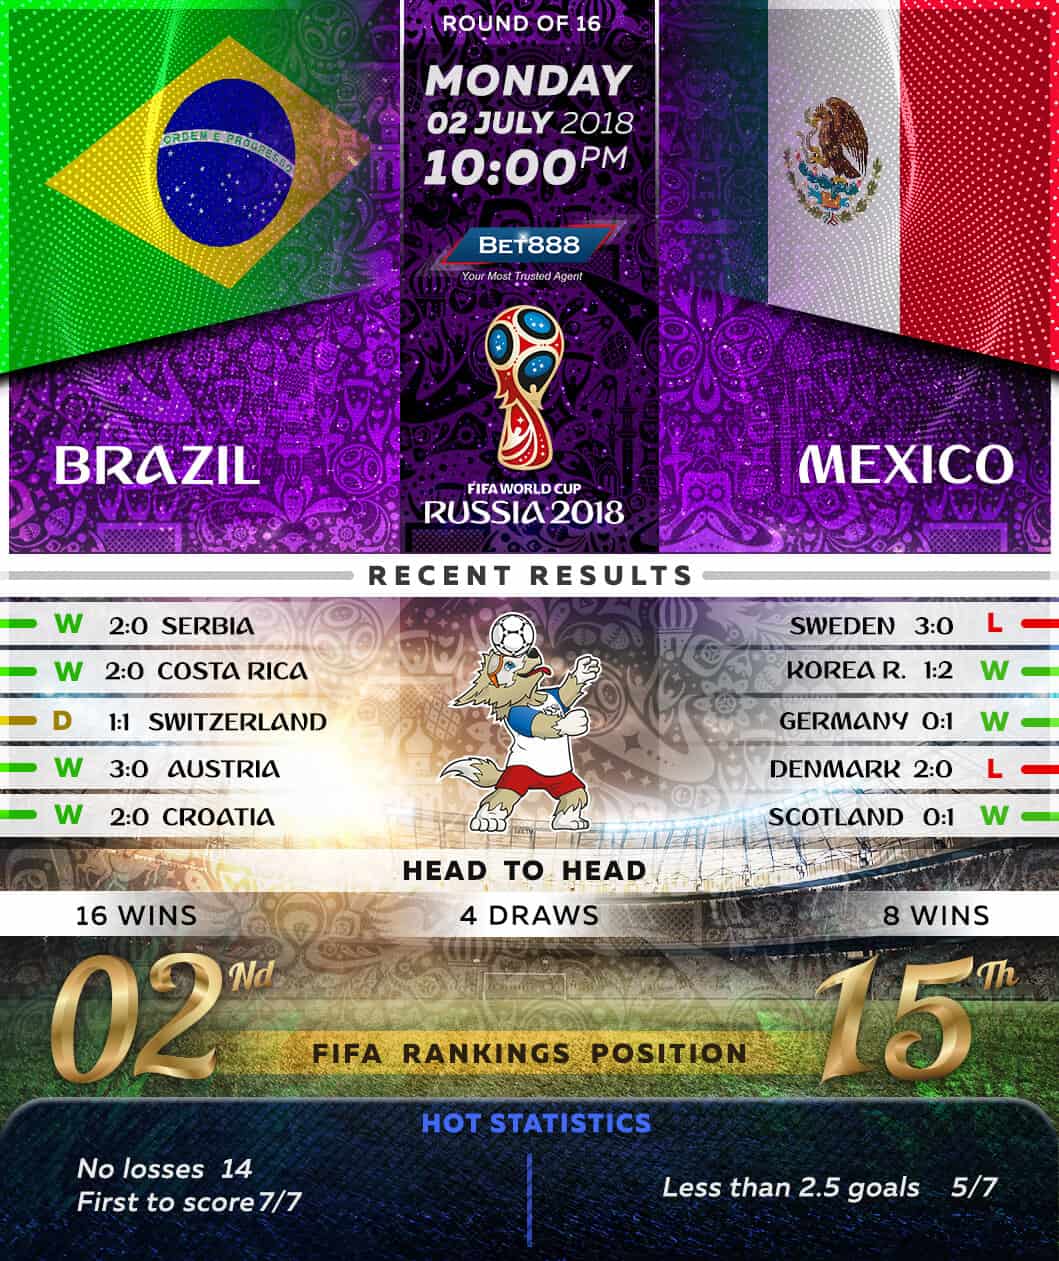 Brazil vs Mexico 02/07/18